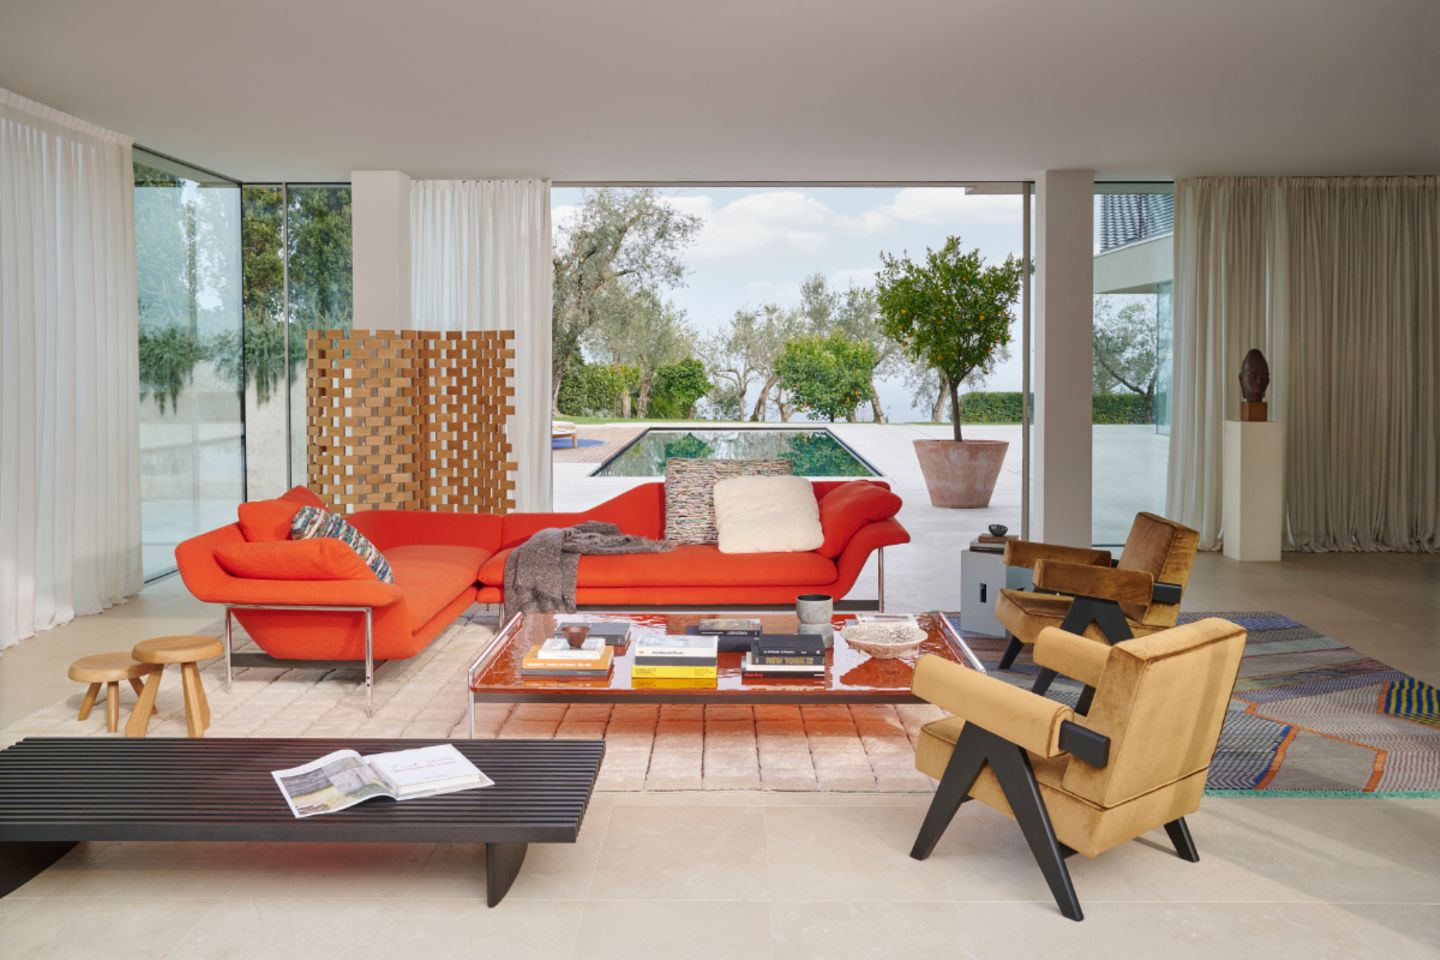 Wohnzimmer mit großer Fensterfront und leuchtend orangenem Sofa